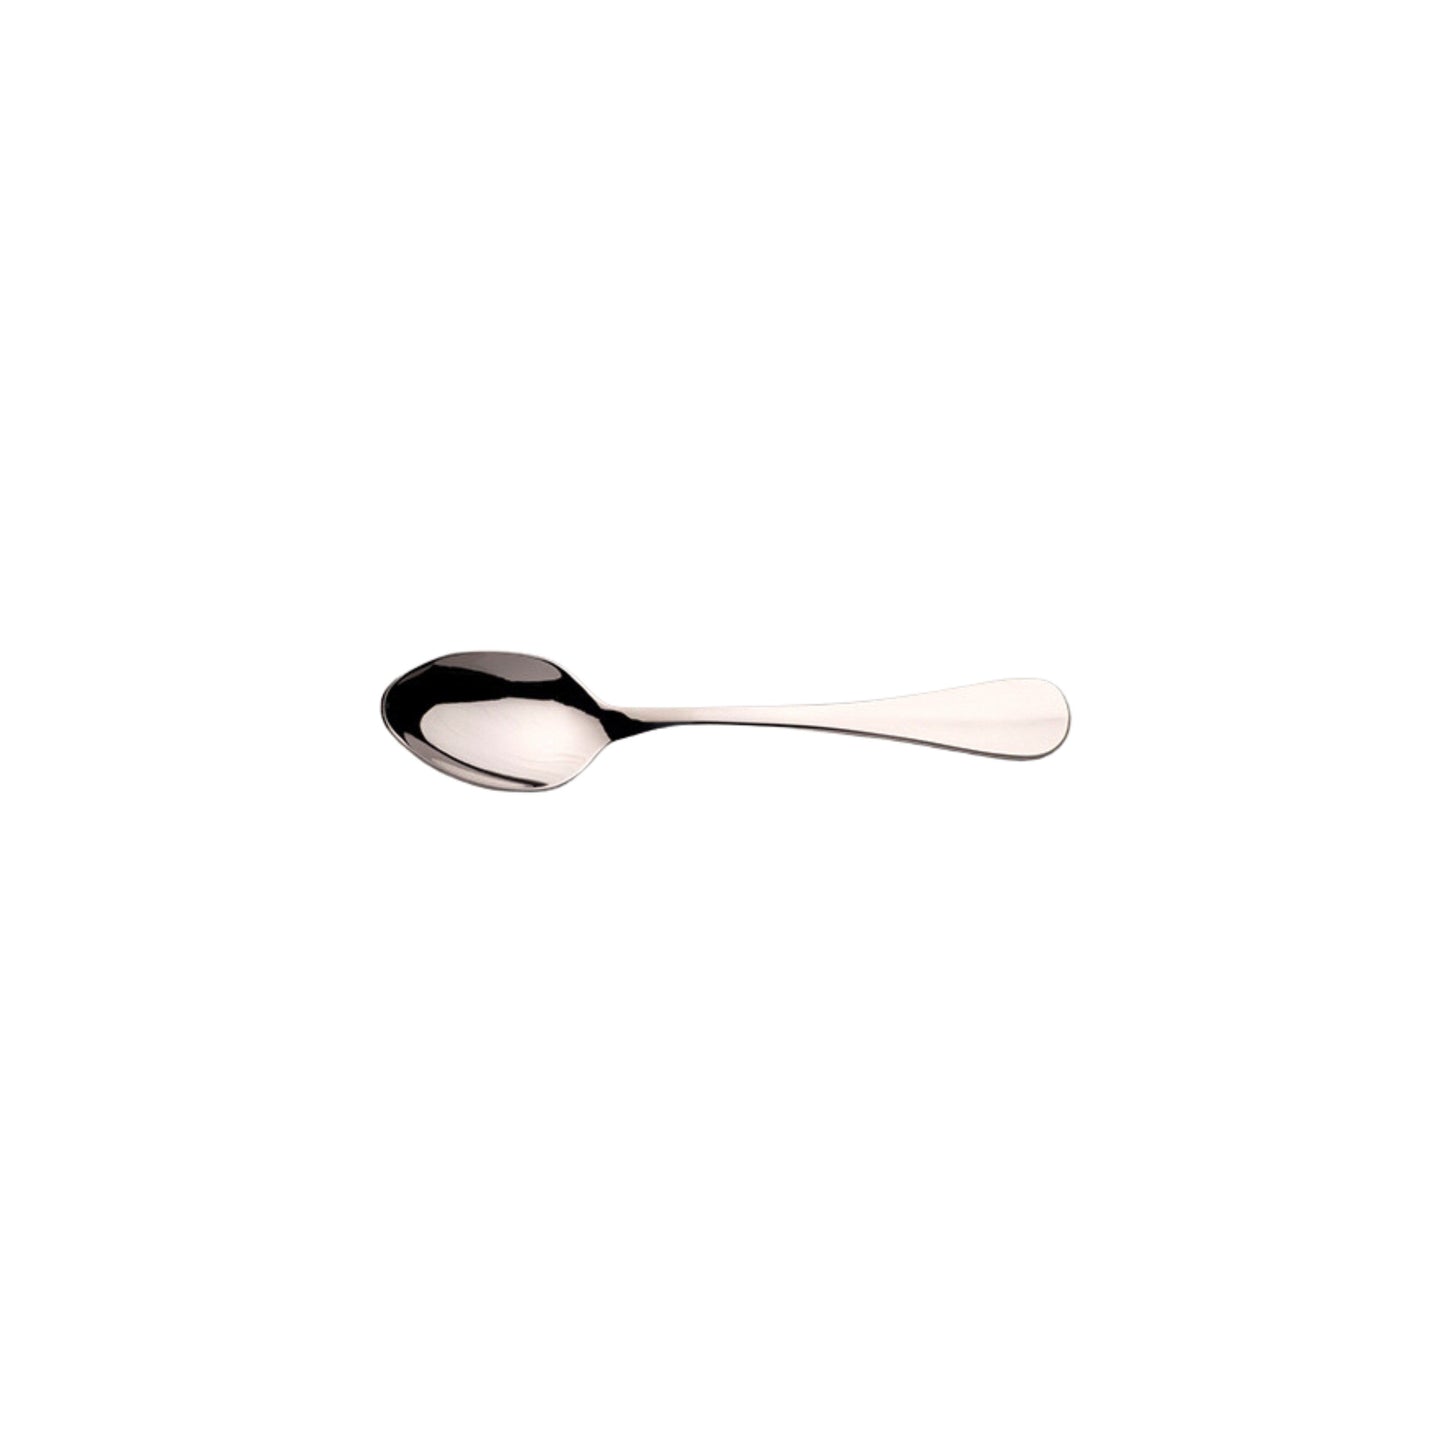 Dubarry stainless steel flatware cutlery